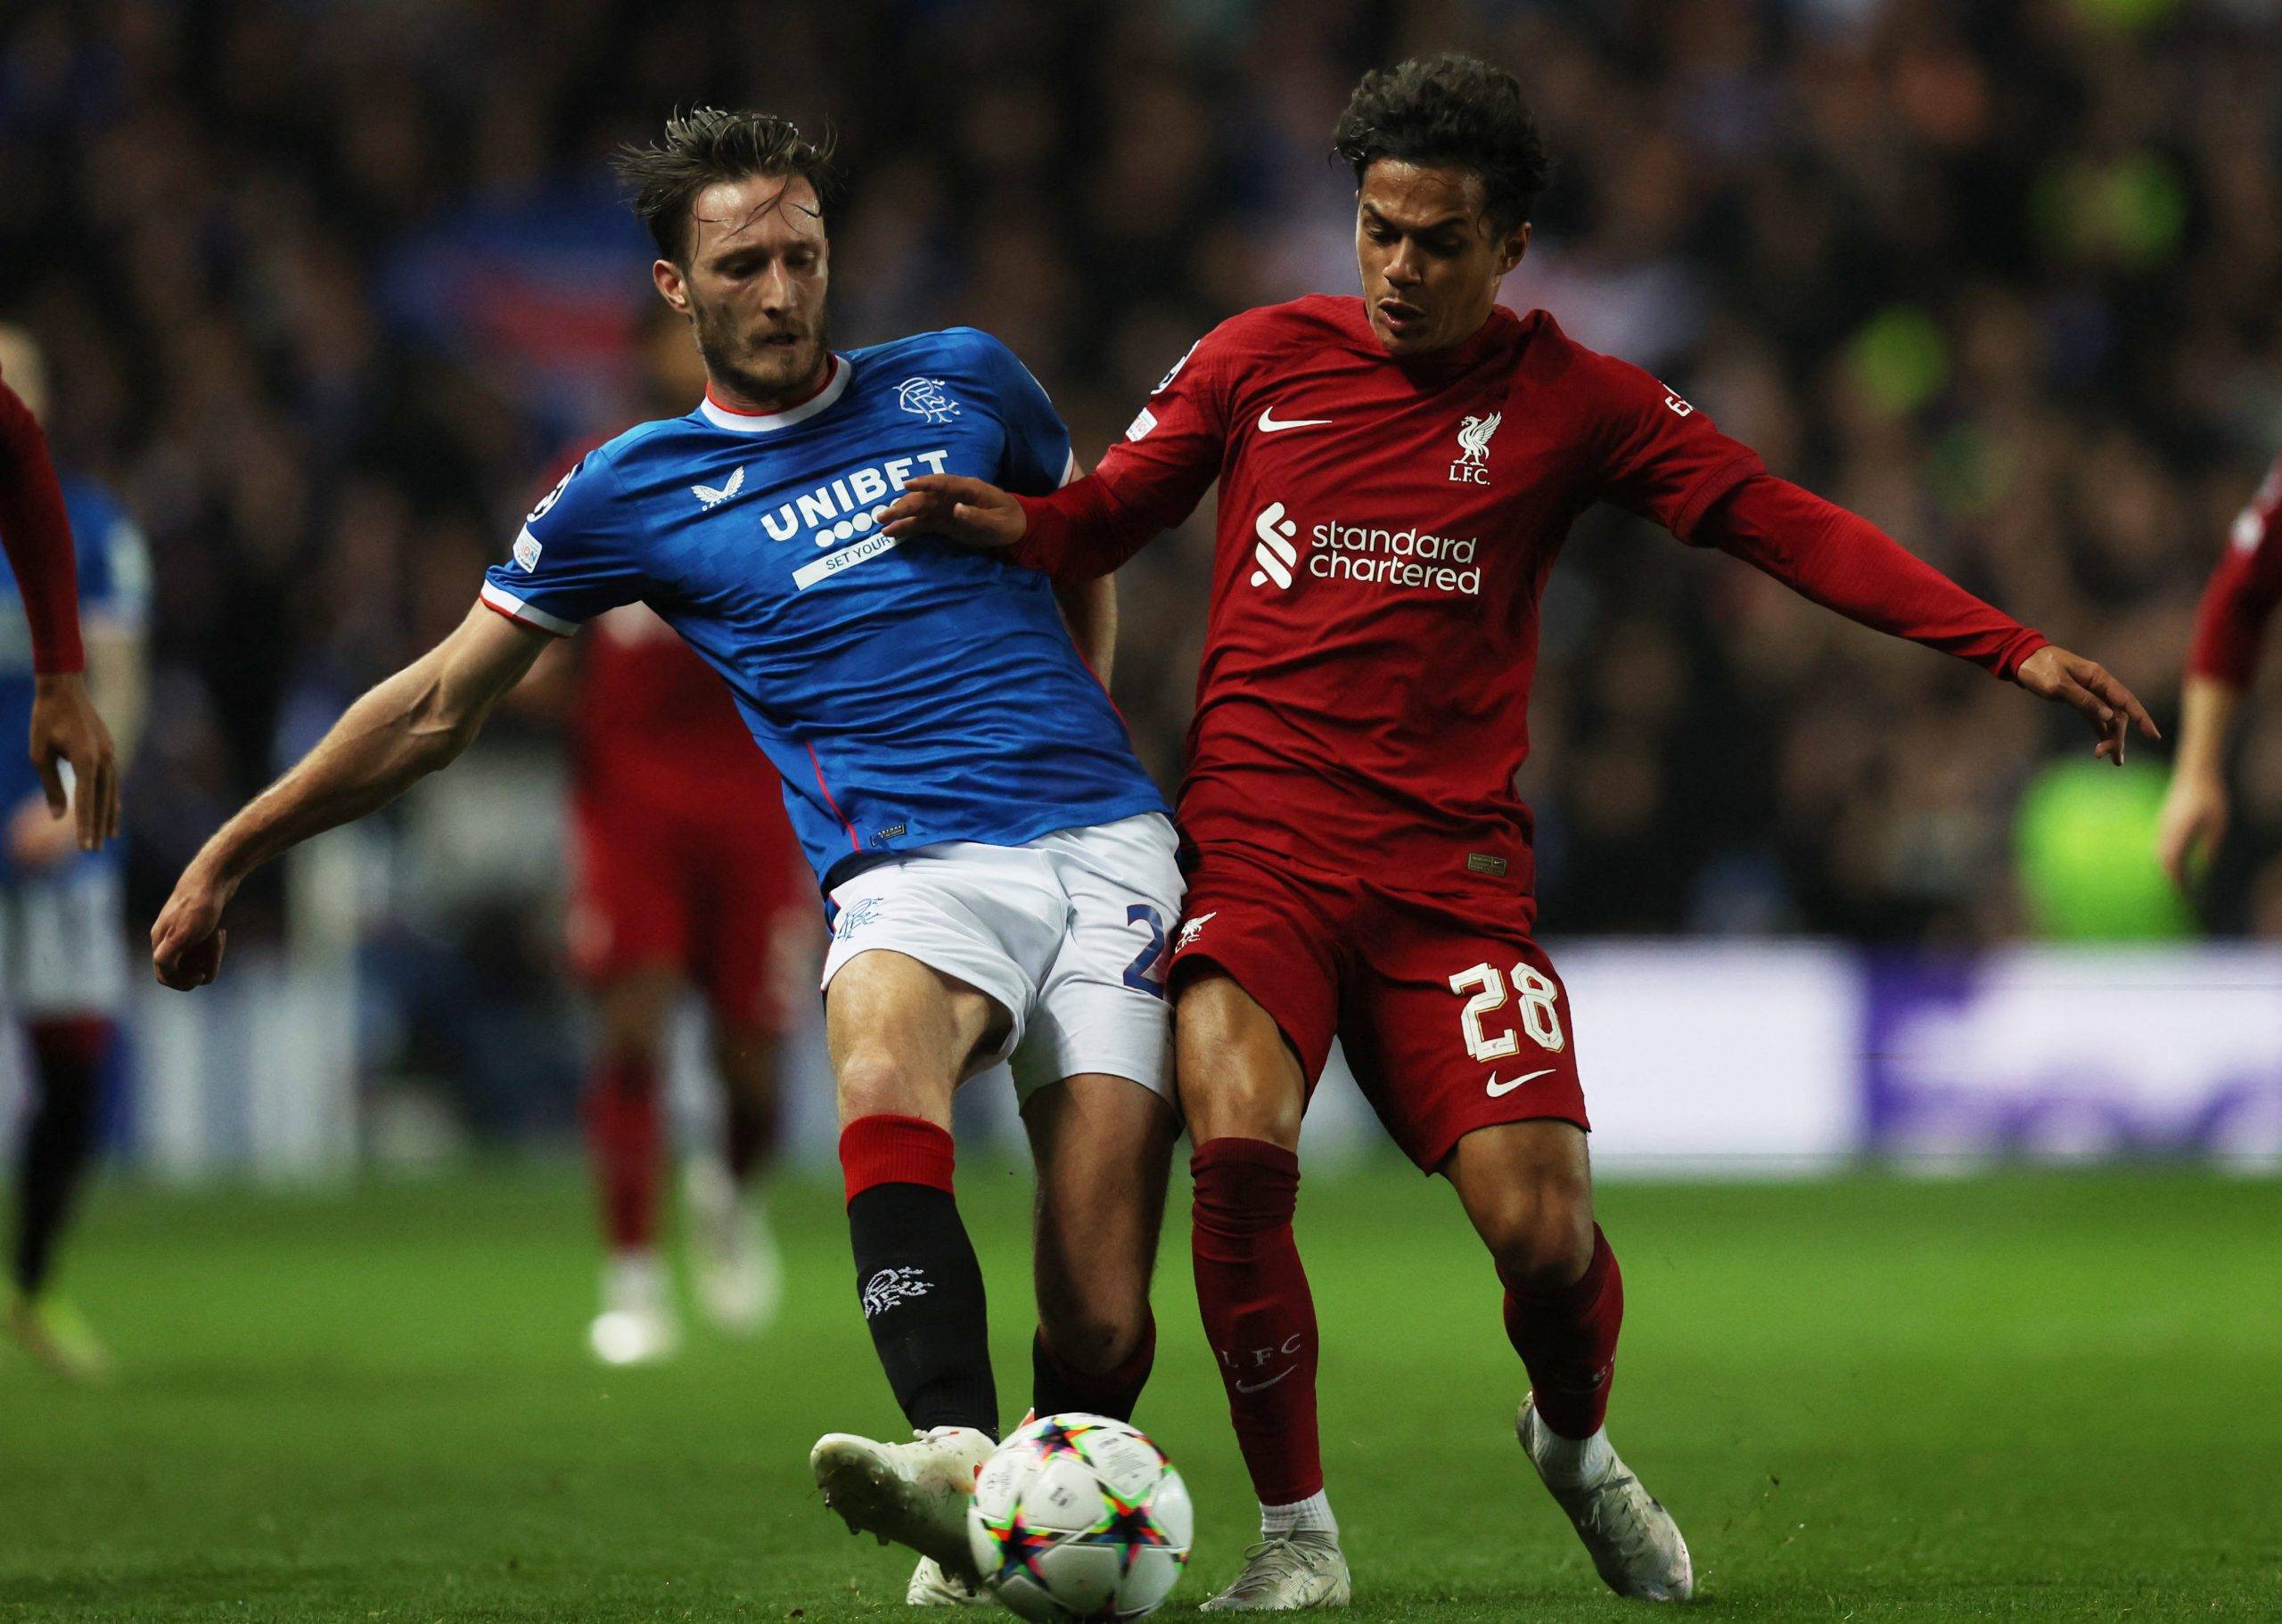 Liverpool: Fabio Carvalho could step into Diogo Jota's role - Liverpool News